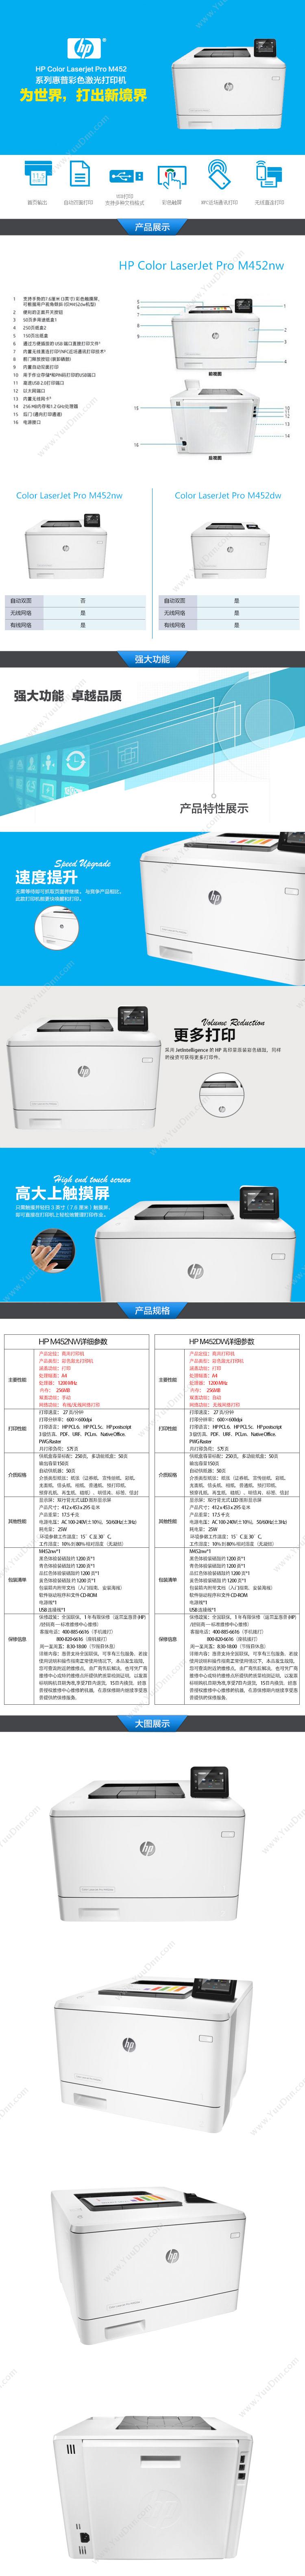 惠普 HP M452nw 彩色 A4  (打印/有线网络/无线网络) A4彩色激光打印机